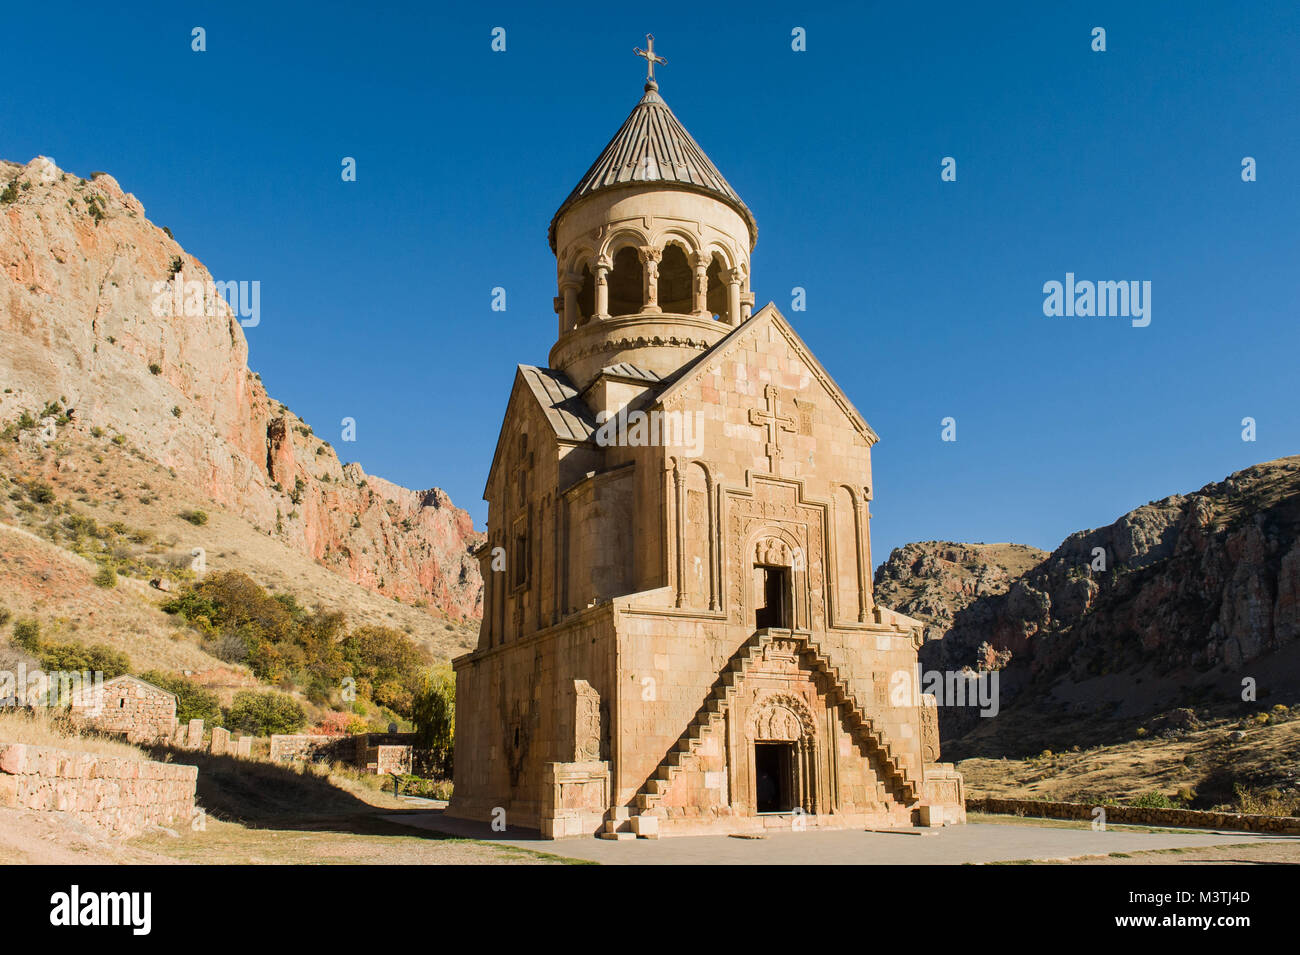 Noravank, il significato di "nuovo monastero' in armeno è un 13esimo secolo monastero armeno, situato a 122km da Yerevan in una stretta gola realizzata dall'Amaghu ri Foto Stock